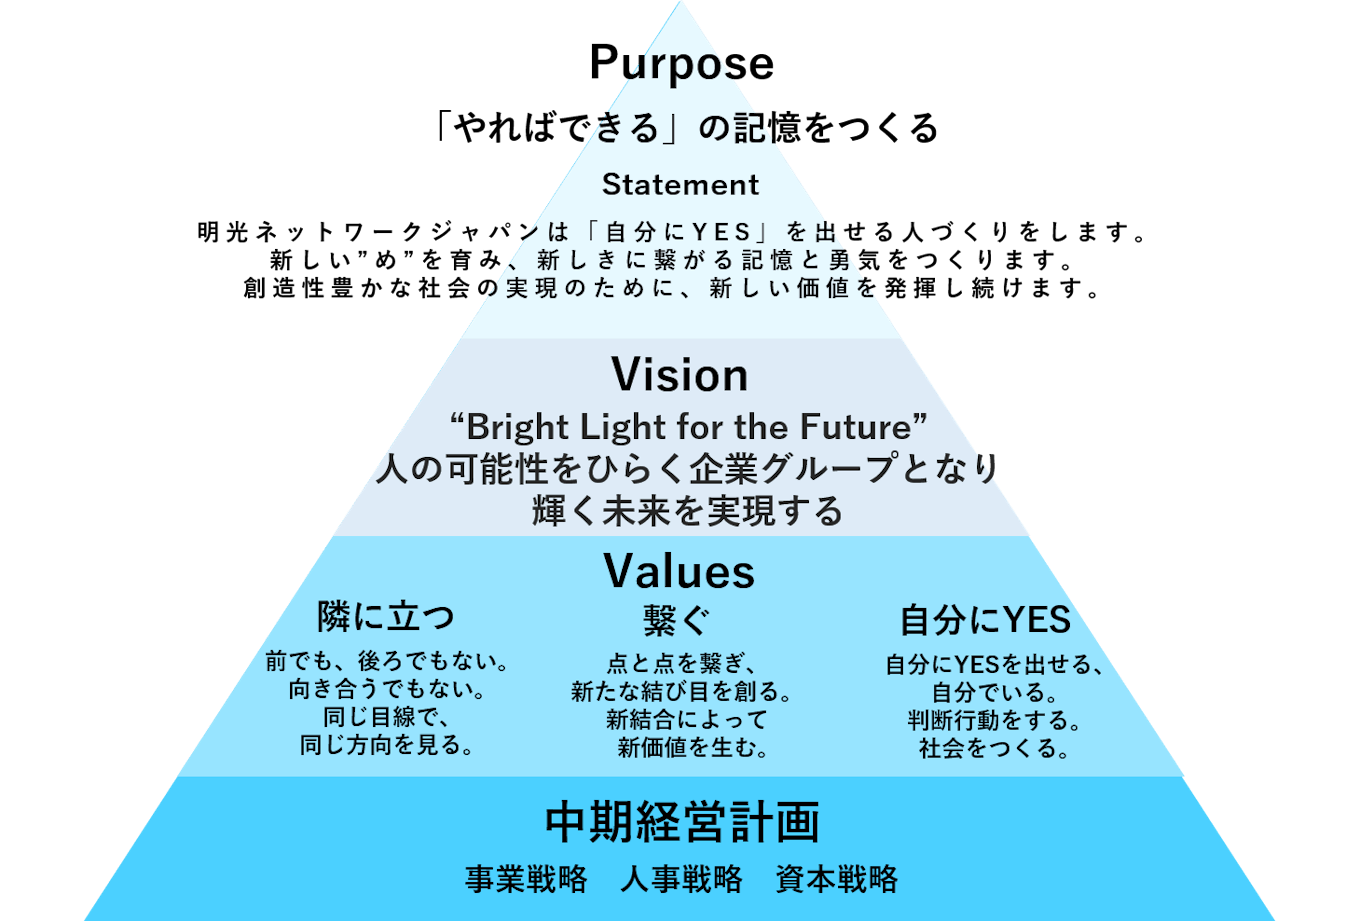 明光ネットワークジャパン　Purpose・Vision・Values